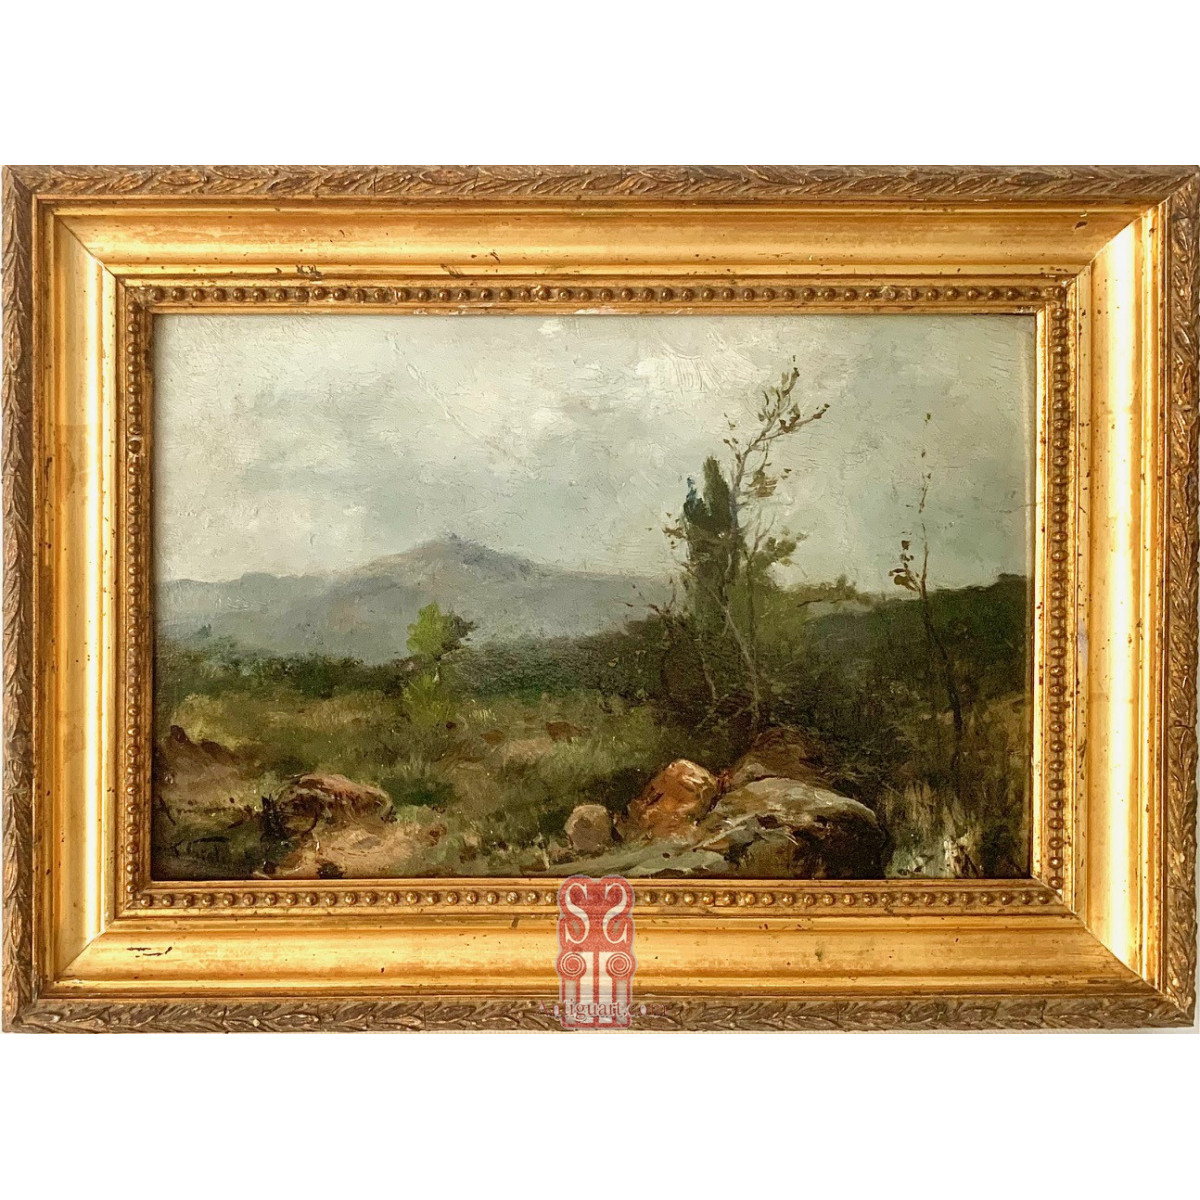 Ramon Stolz seguí (Valencia 1872 - 1924), mountain landscape